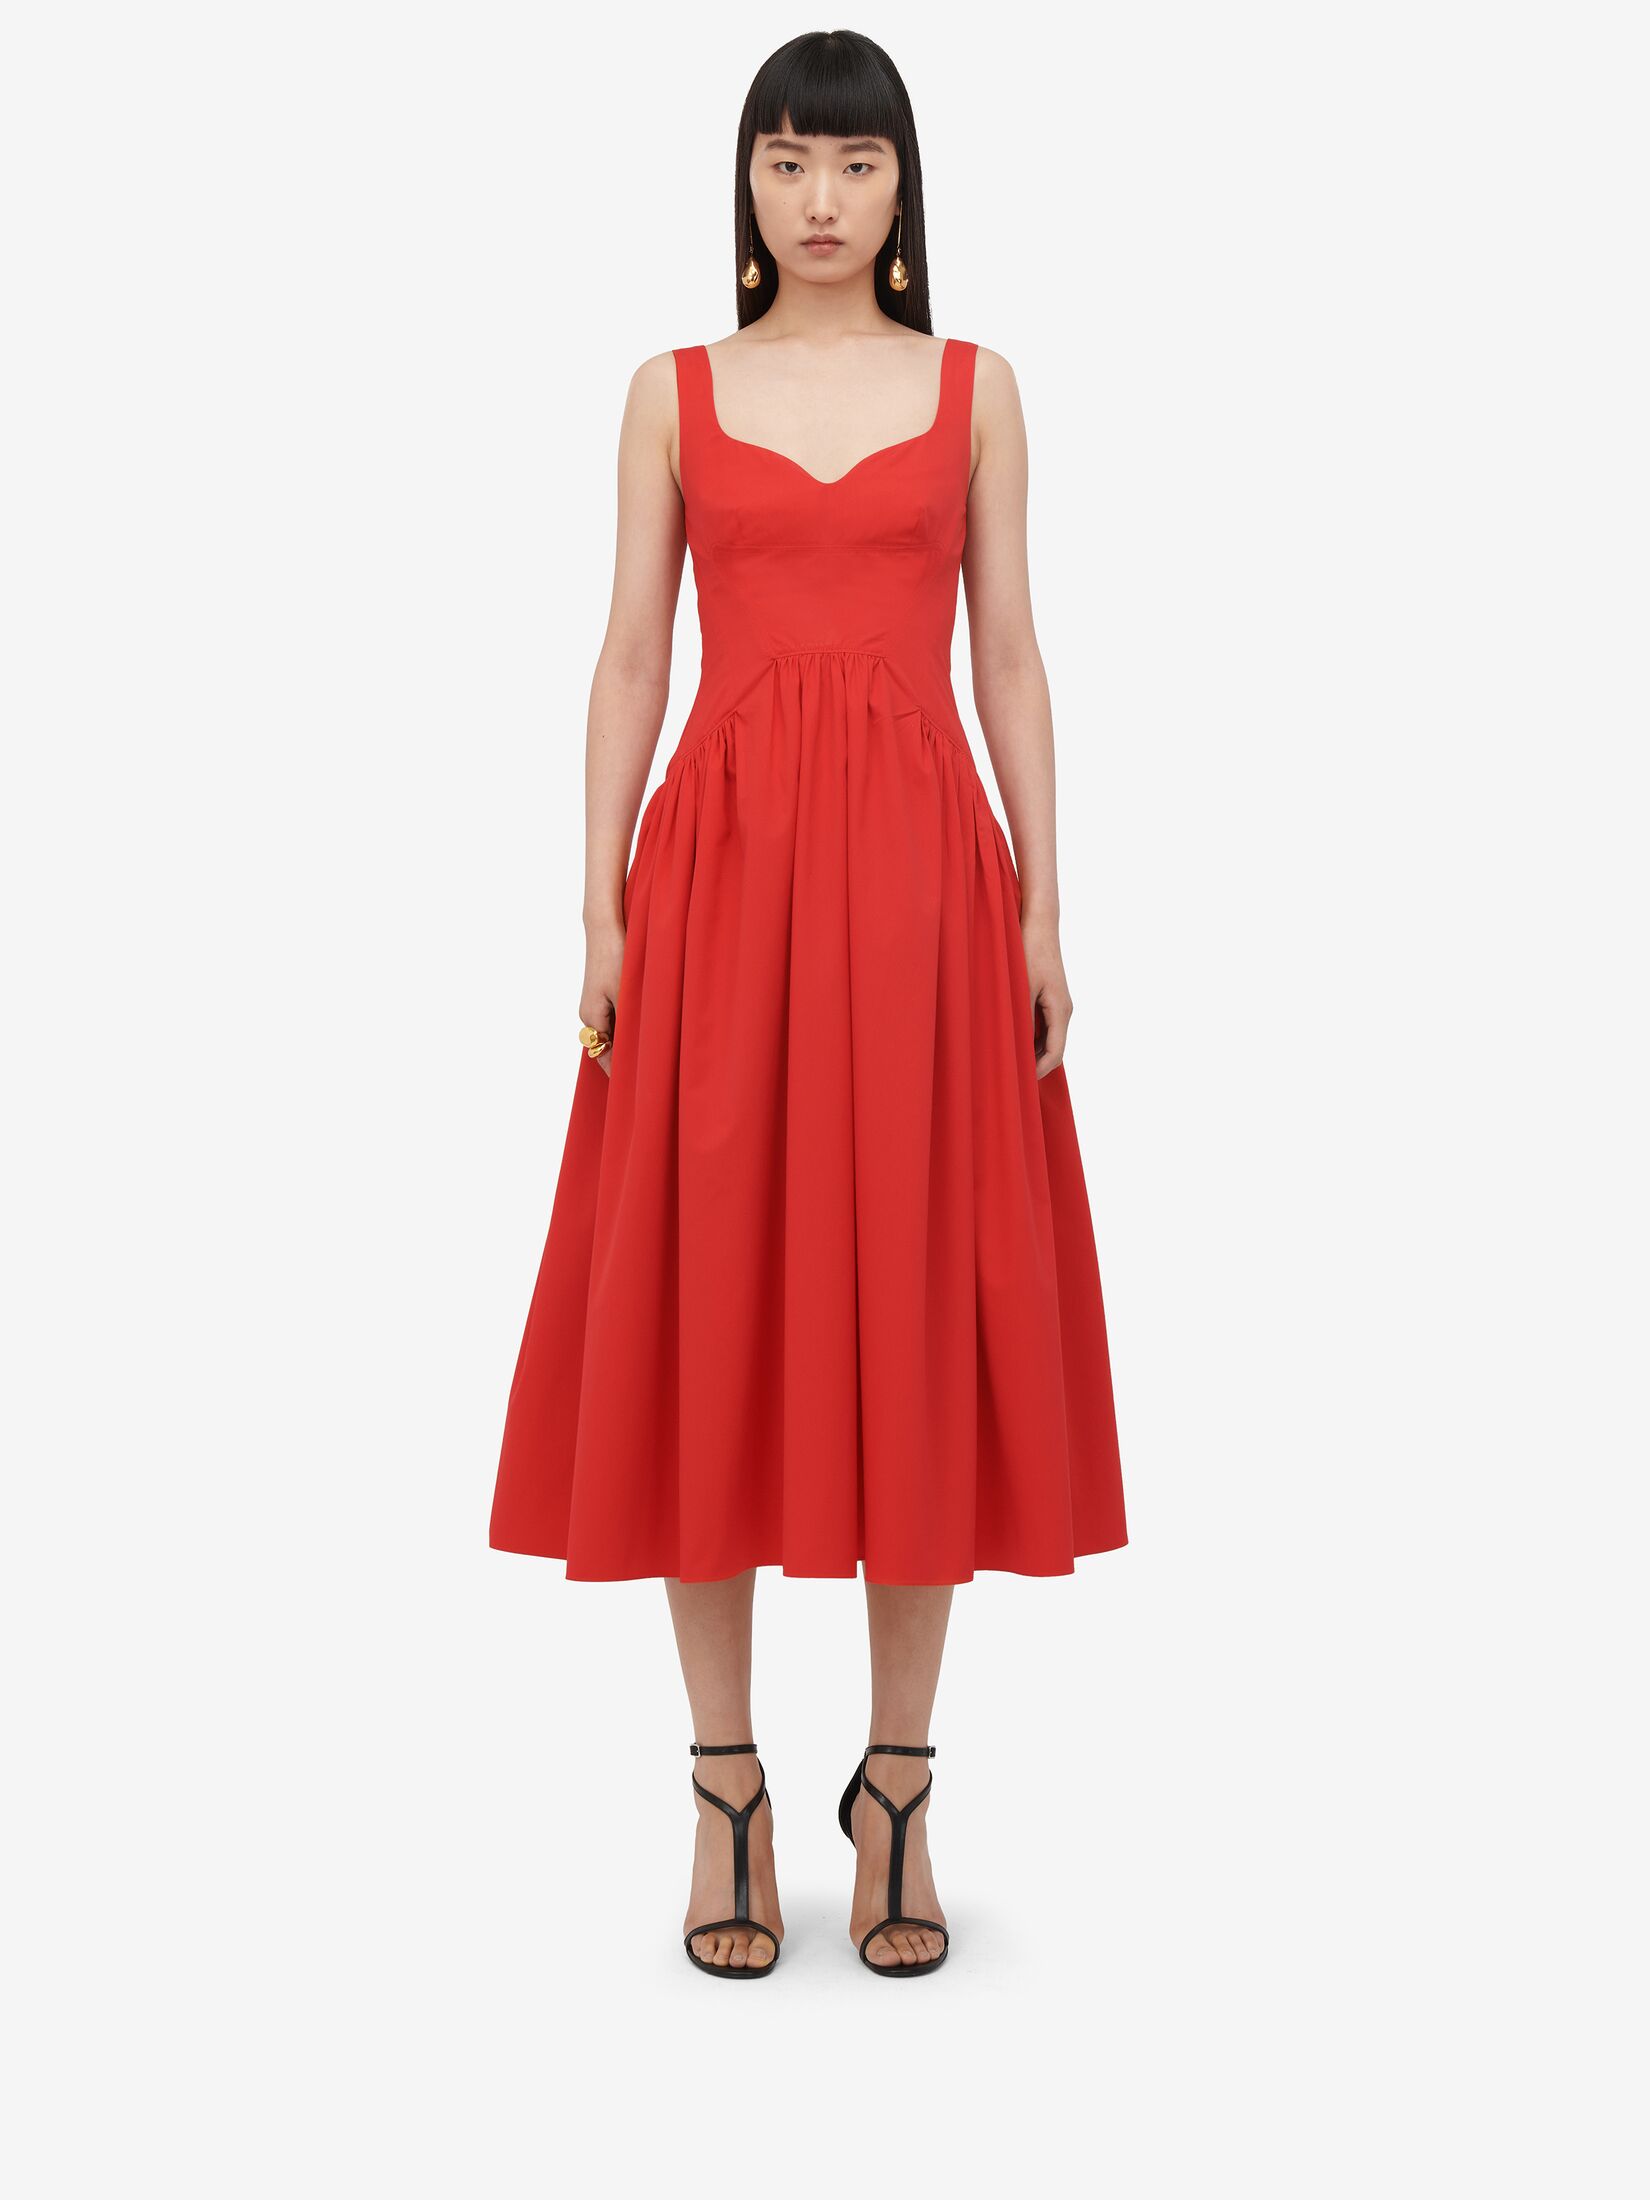 Designer Dresses | Drape, Midi & Pencil | Alexander McQueen UK